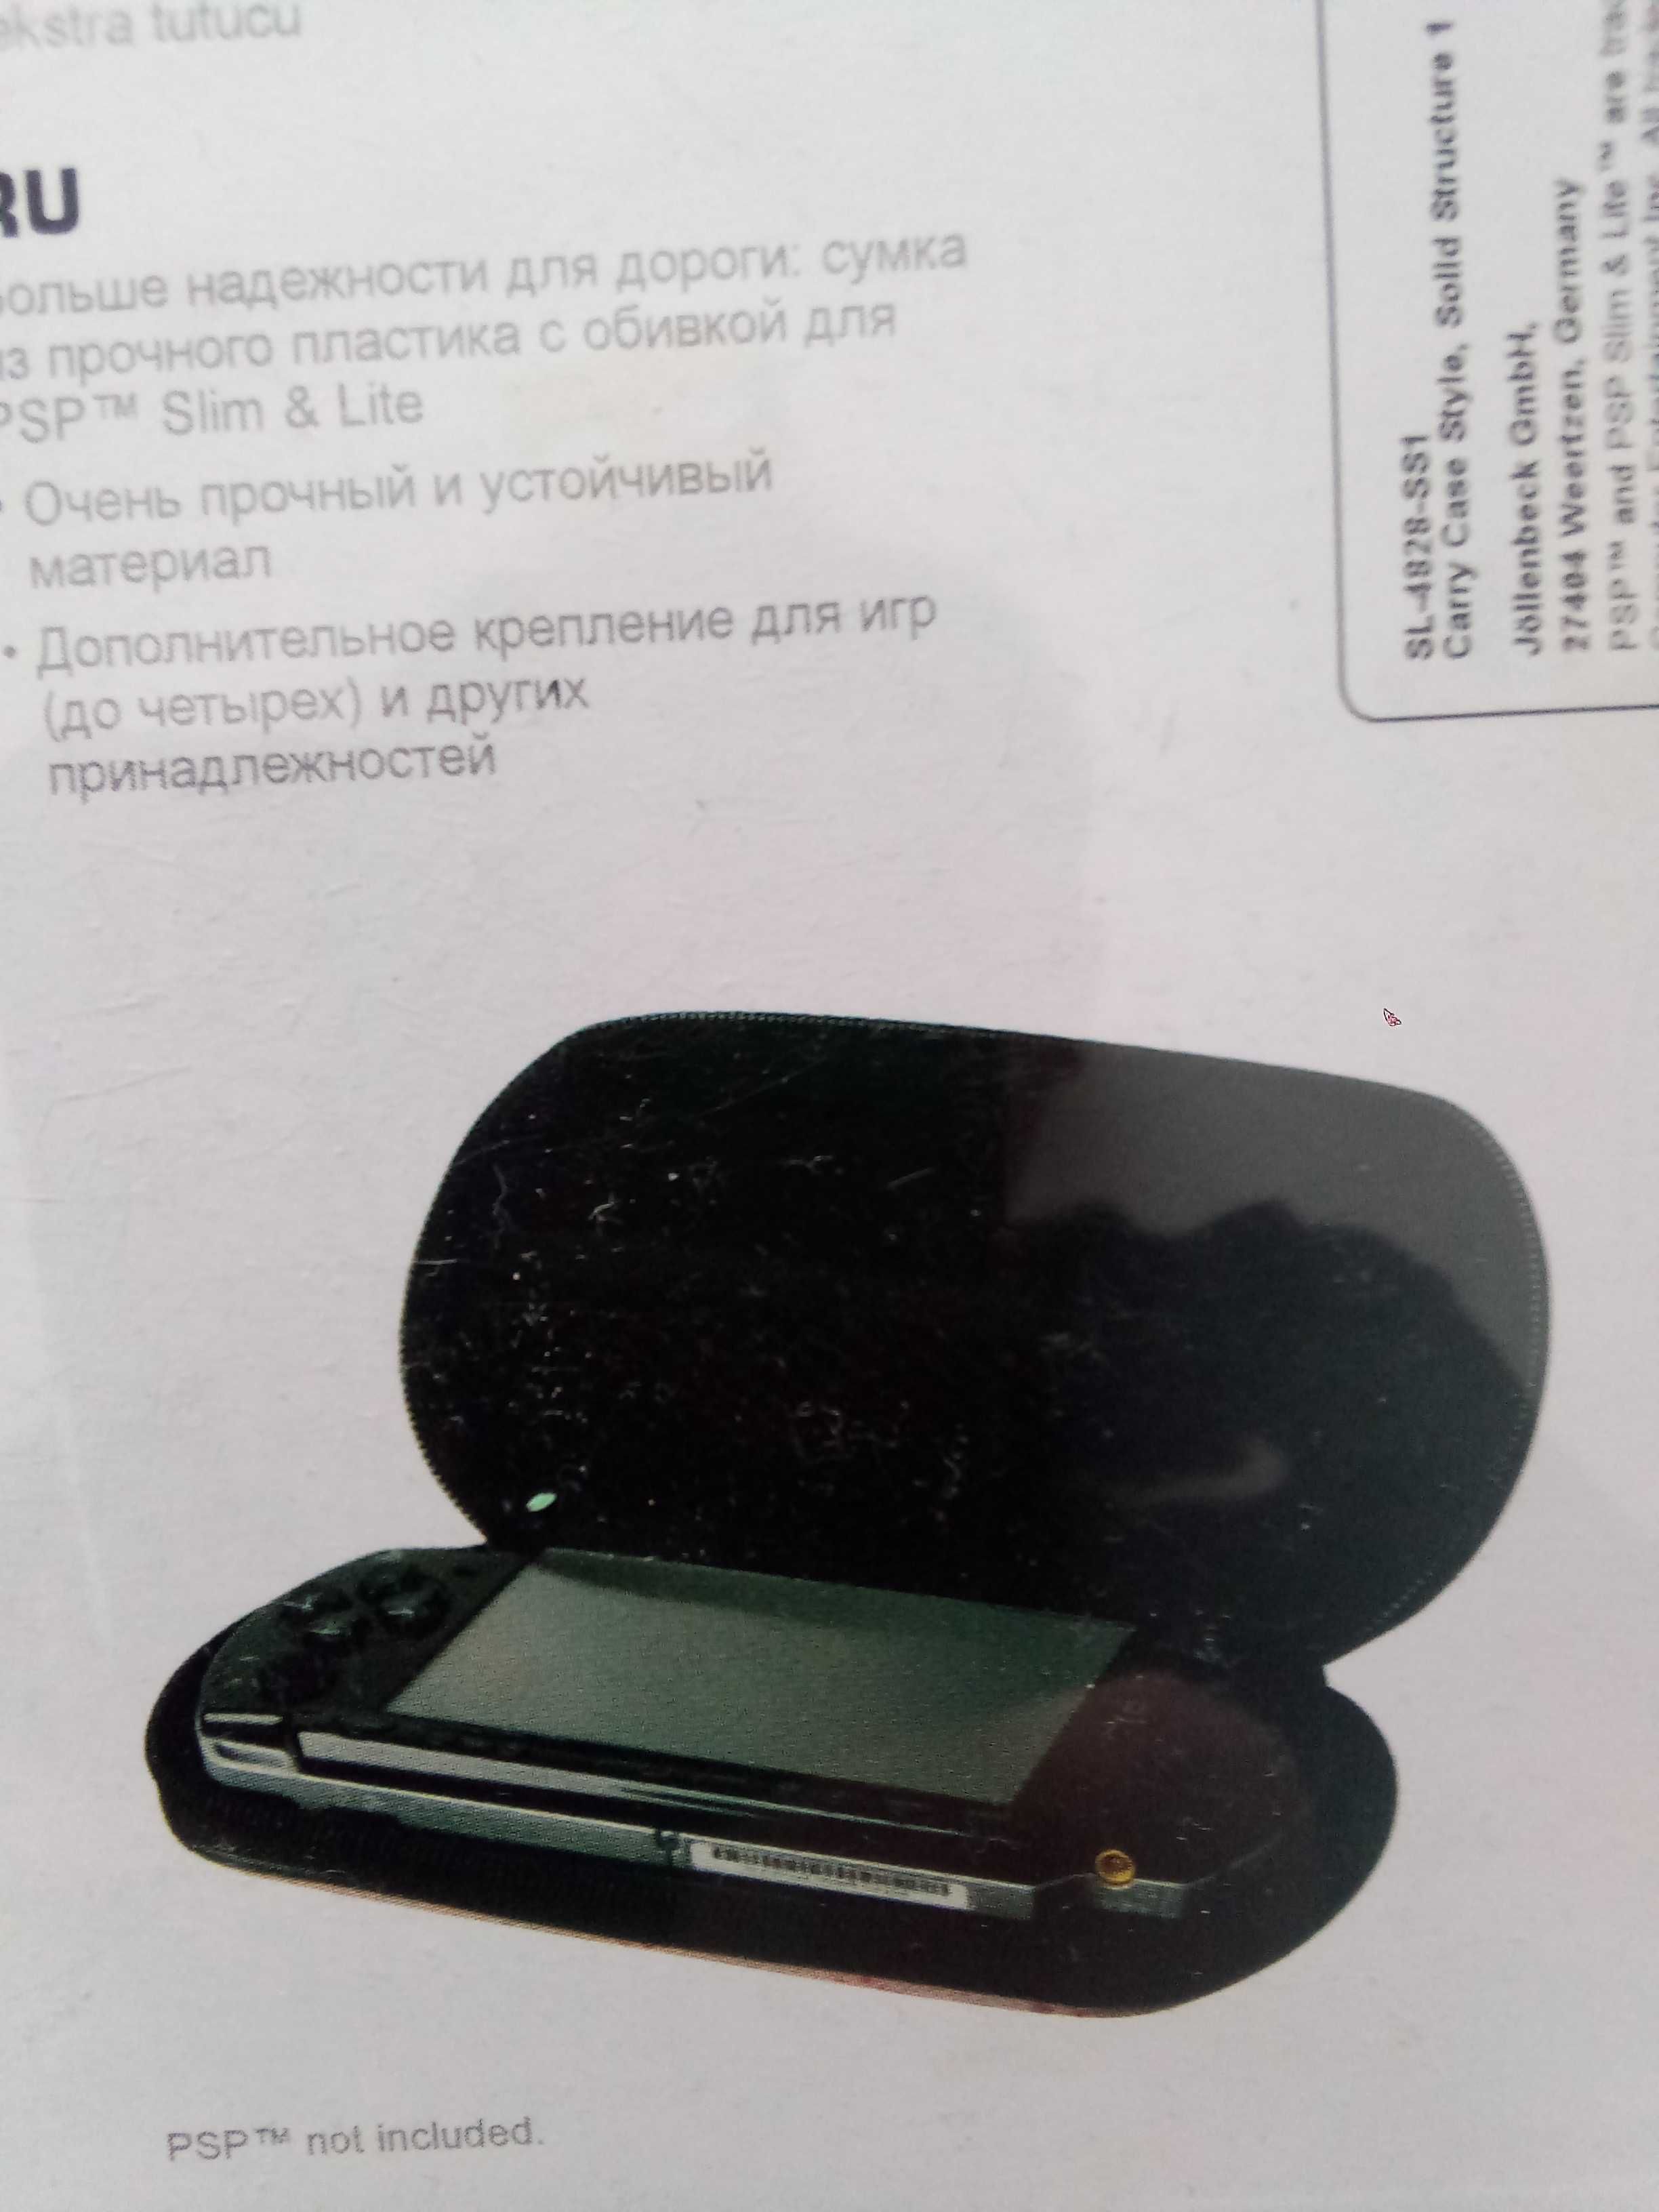 PSP slim i PSP classic torba transportowa